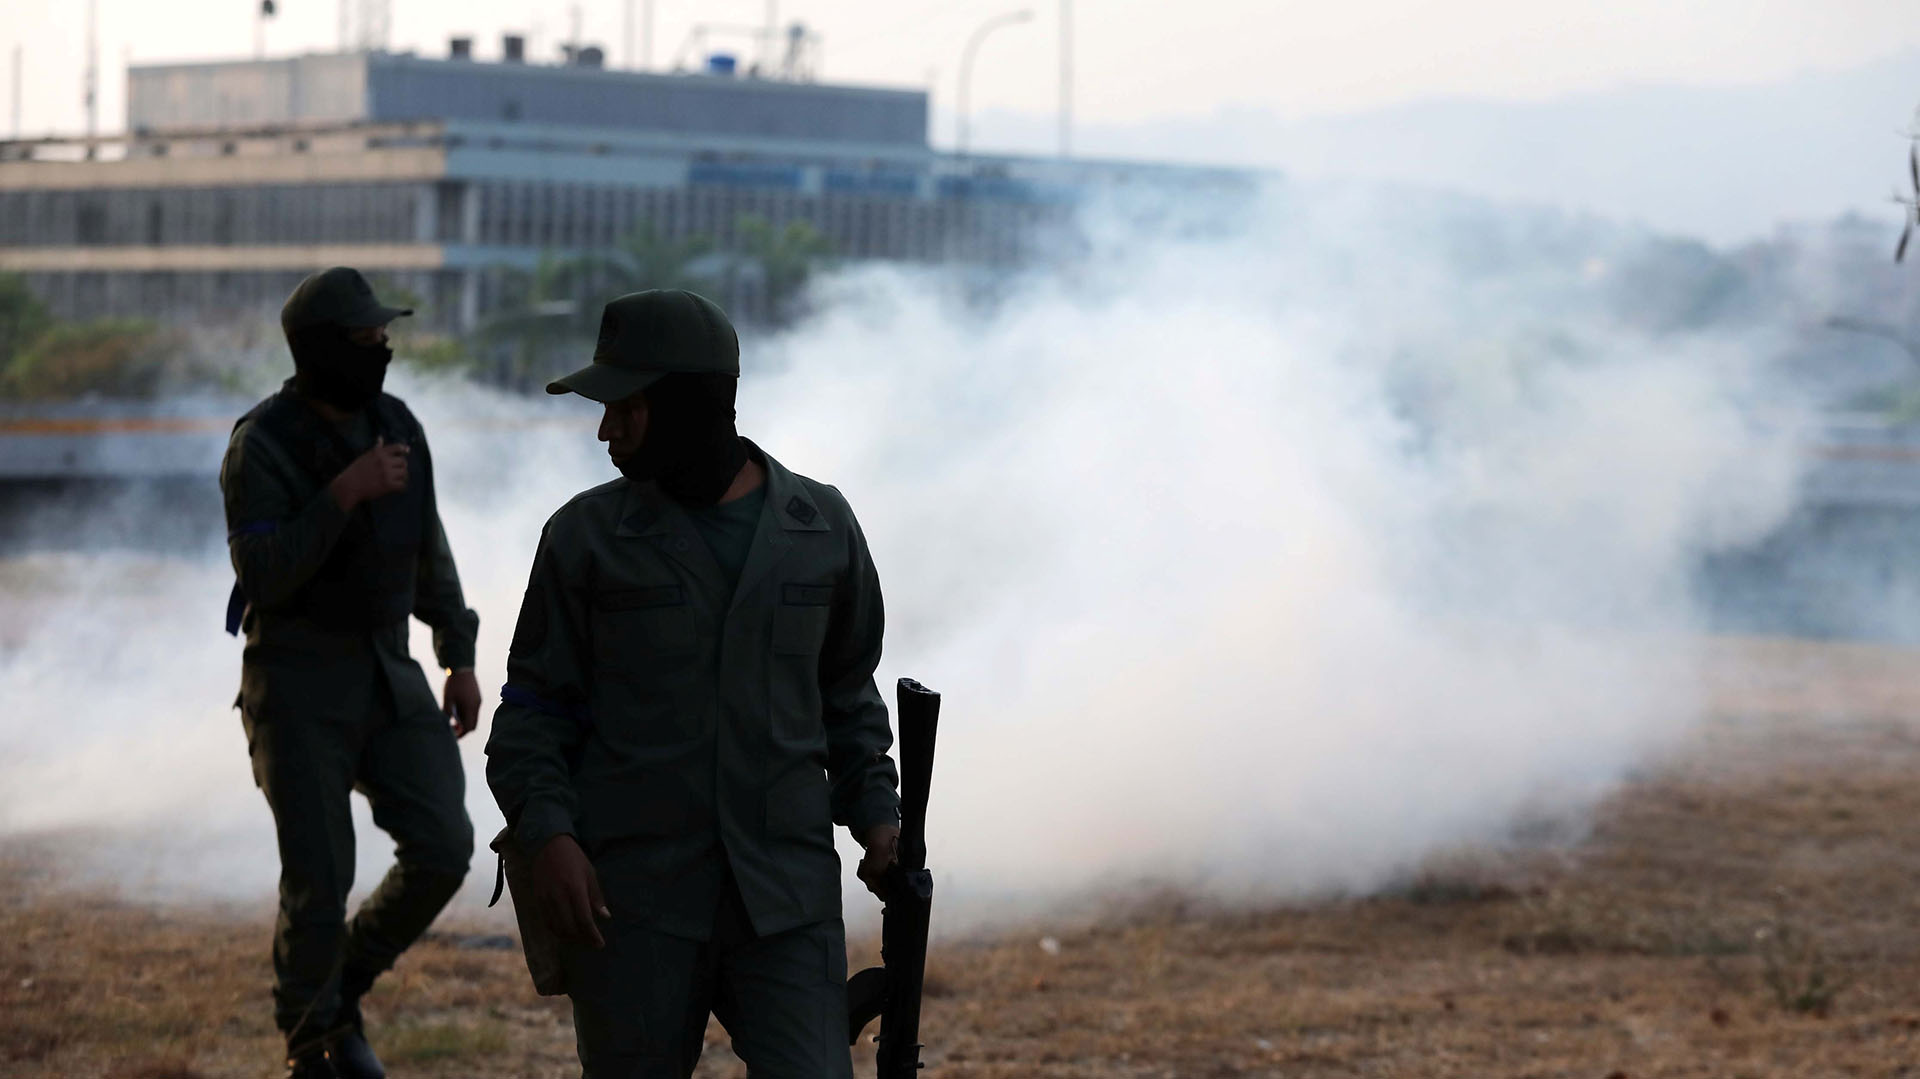 Los militates afines al chavismo lanzaron gases lacrimógenos (Reuters)